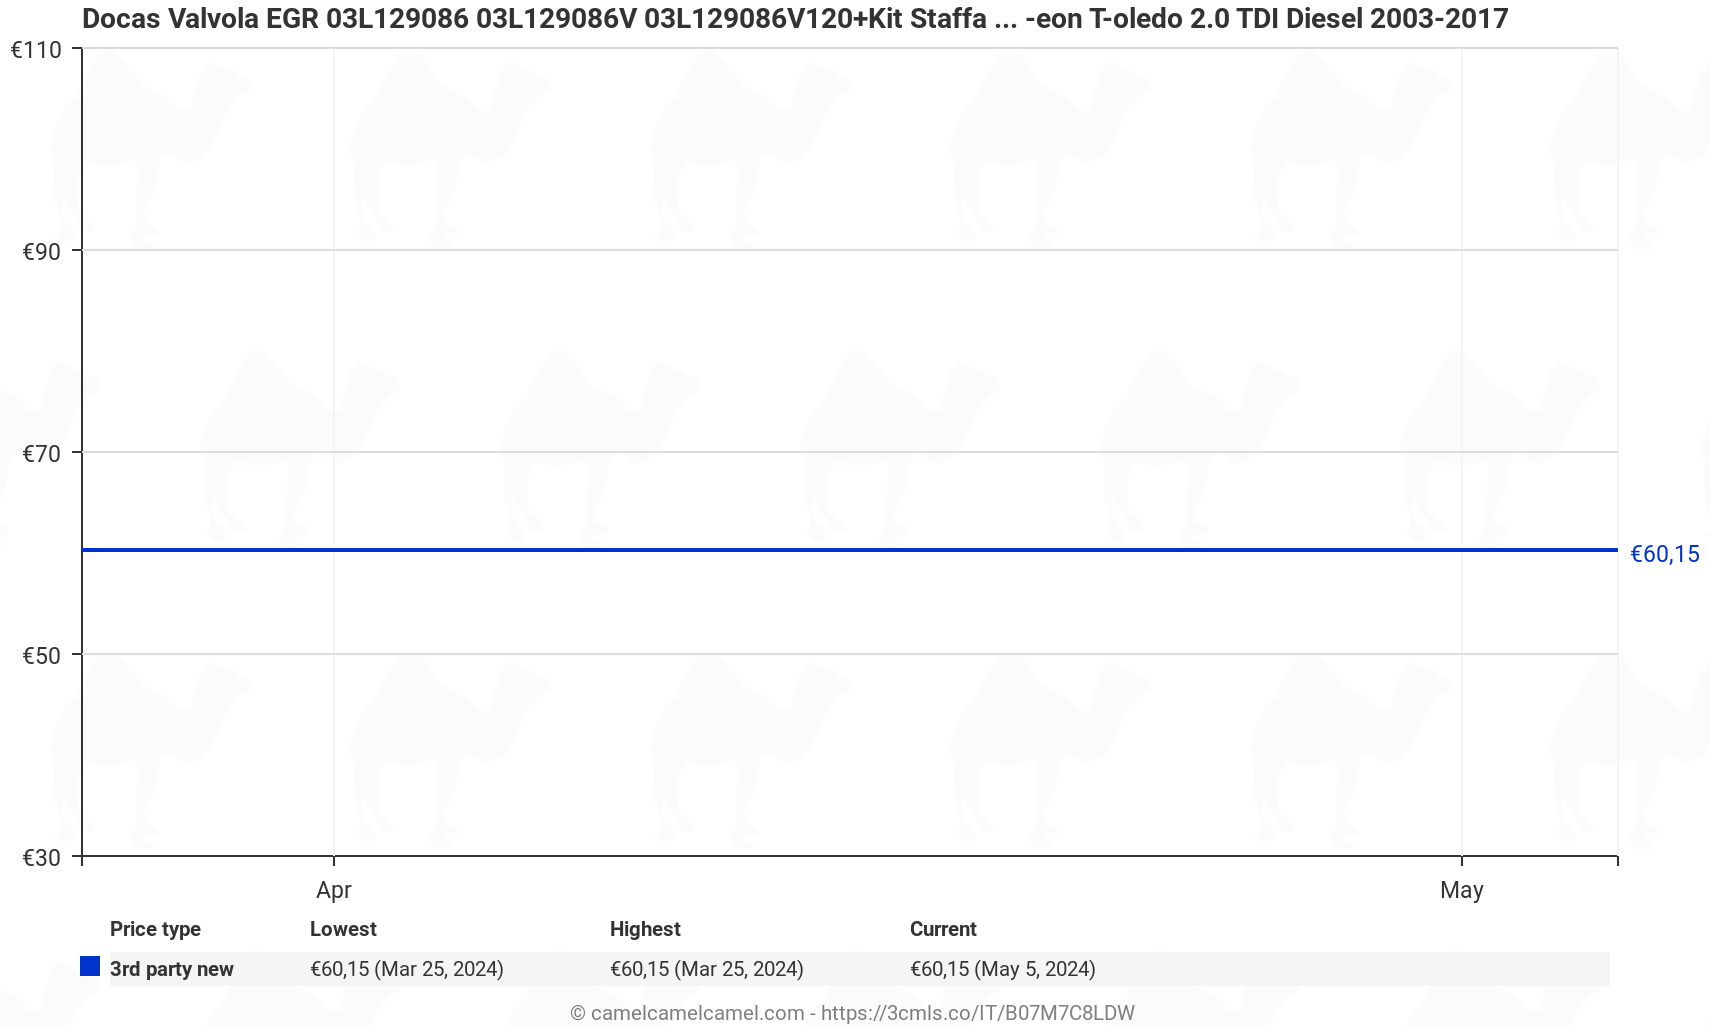 Grafico dei prezzi Docas Valvola EGR 03L129086V120